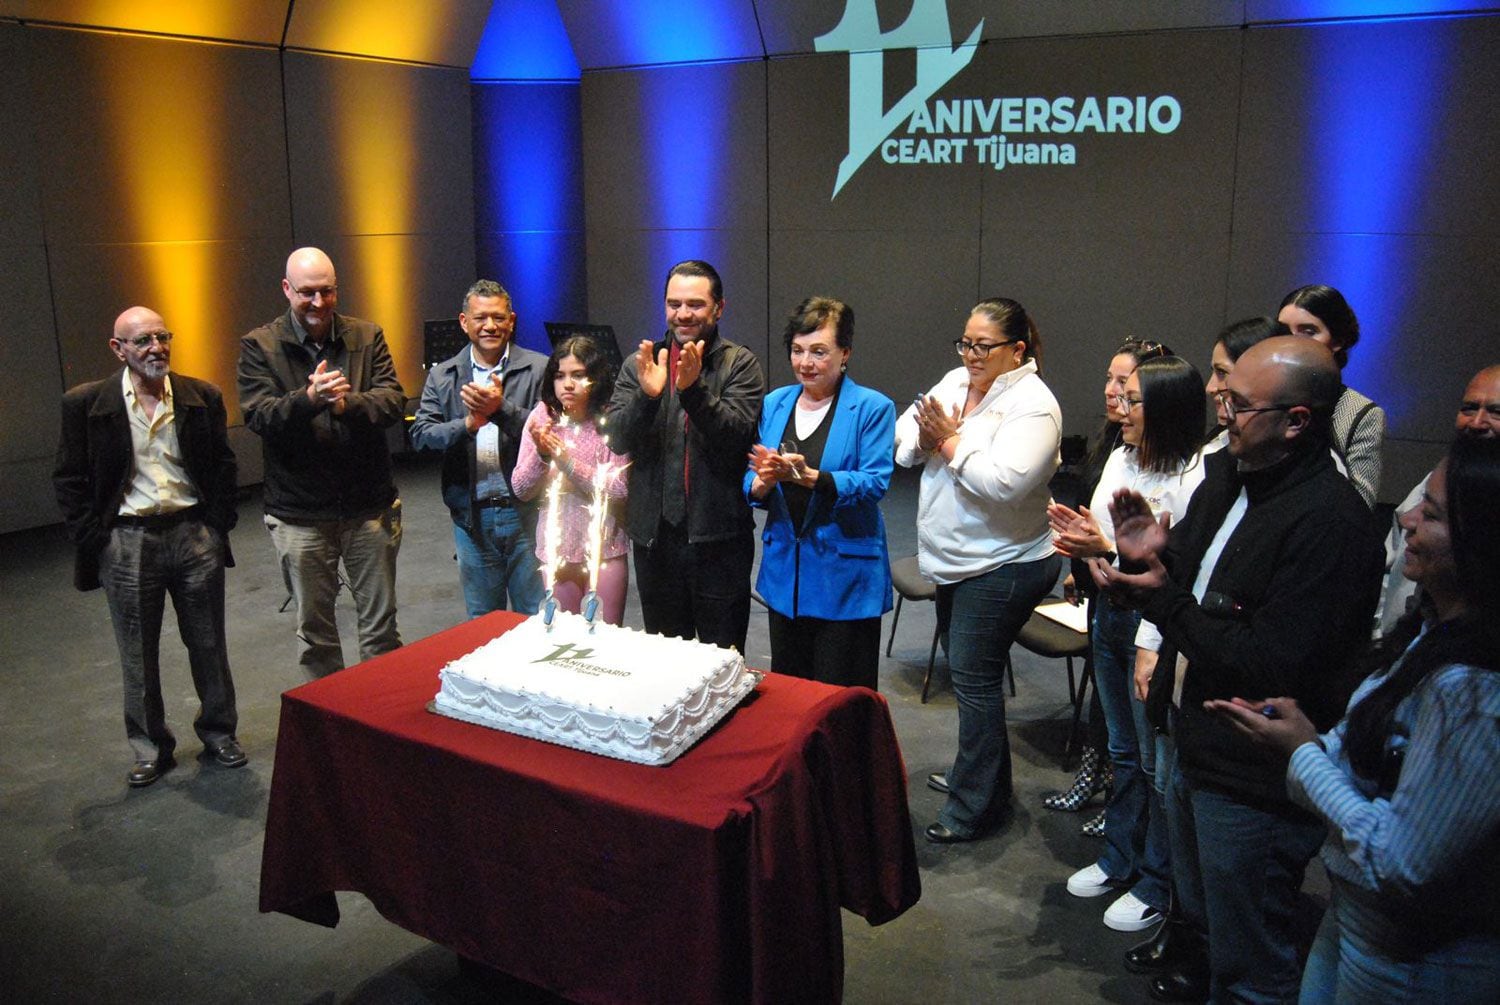 En compañía de la comunidad artística, docente y usuarios, la Secretaría de Cultura de Baja California celebró con las tradicionales mañanitas y partida de pastel.